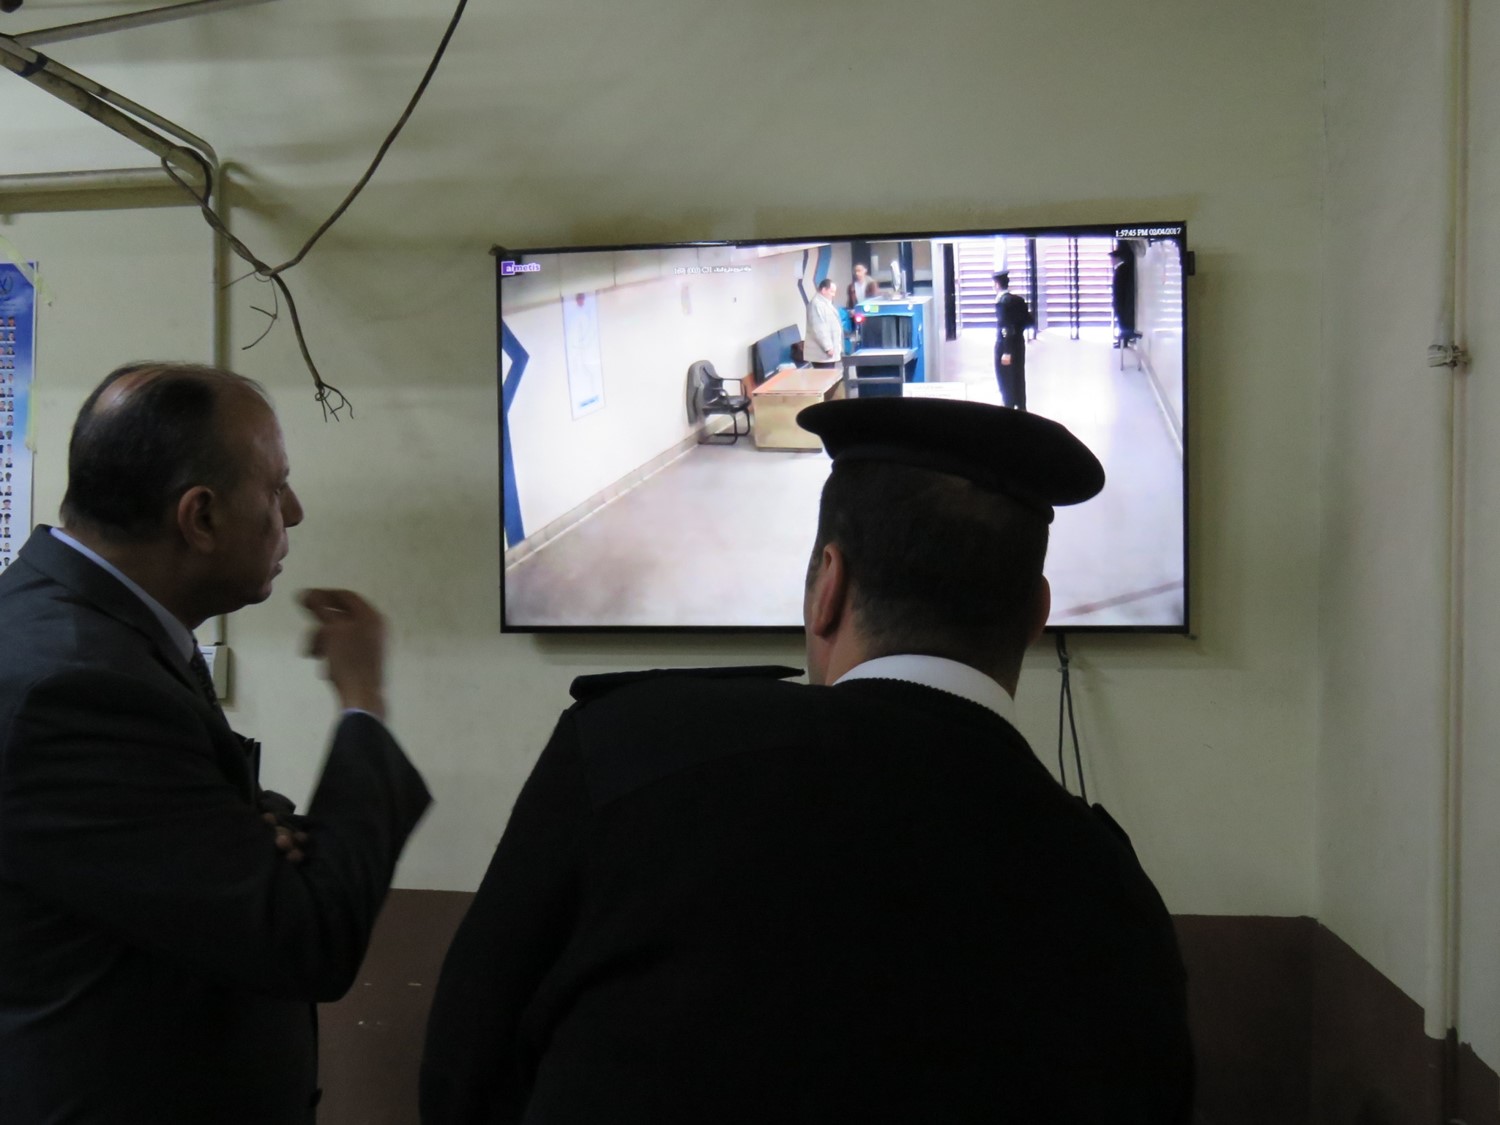  اللواء محمد يوسف يتابع كاميرات المراقبة داخل المترو 